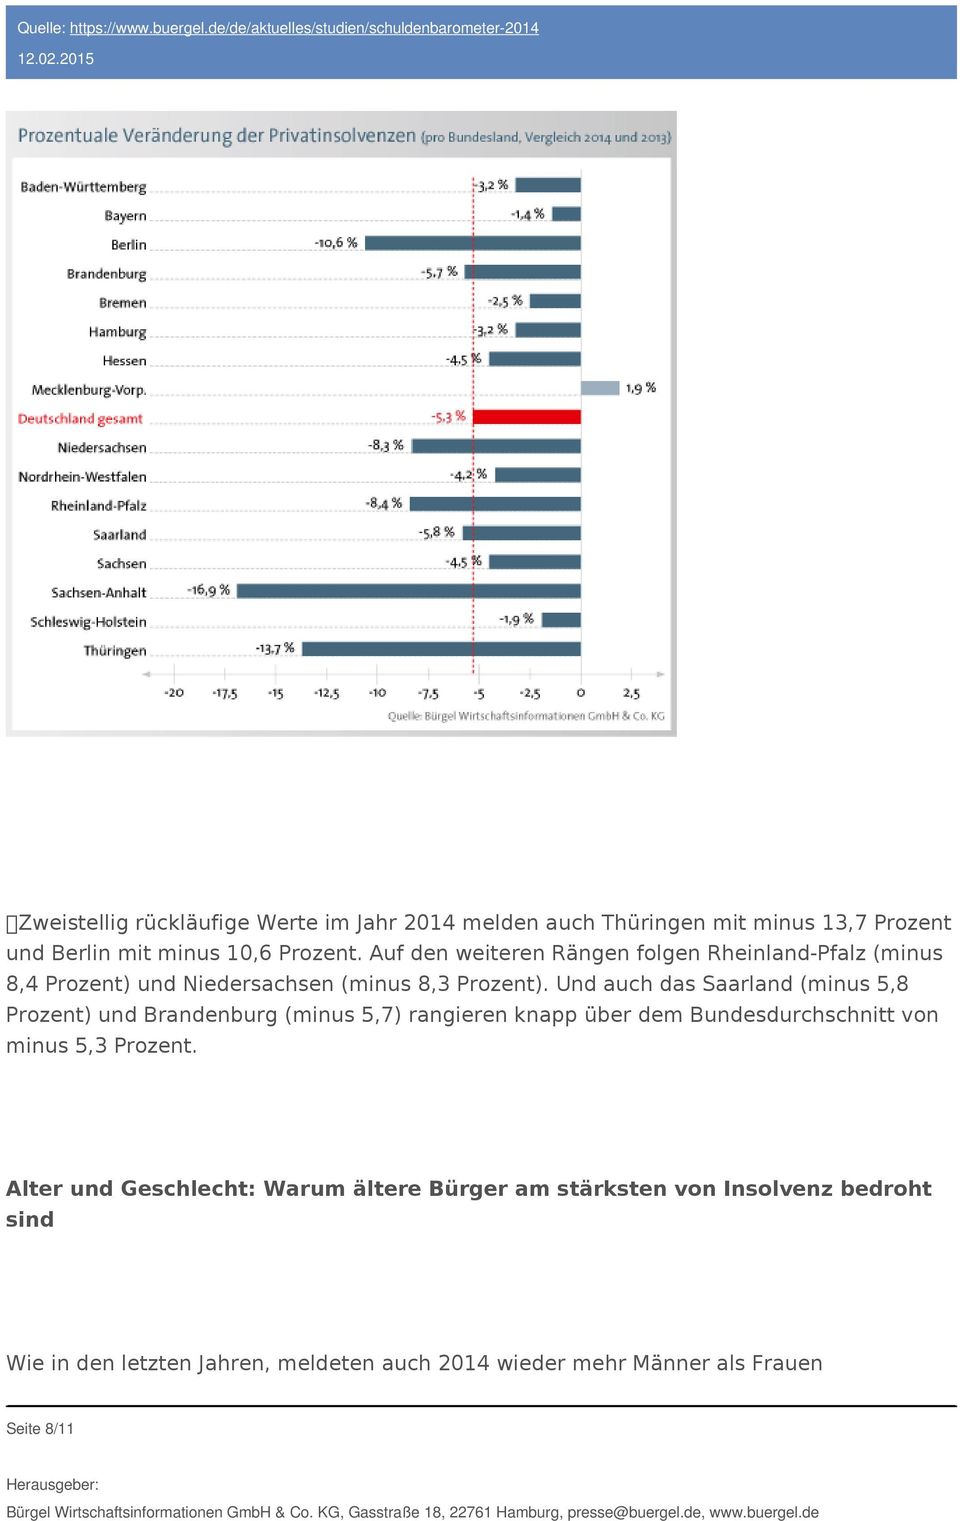 Und auch das Saarland (minus 5,8 Prozent) und Brandenburg (minus 5,7) rangieren knapp über dem Bundesdurchschnitt von minus 5,3